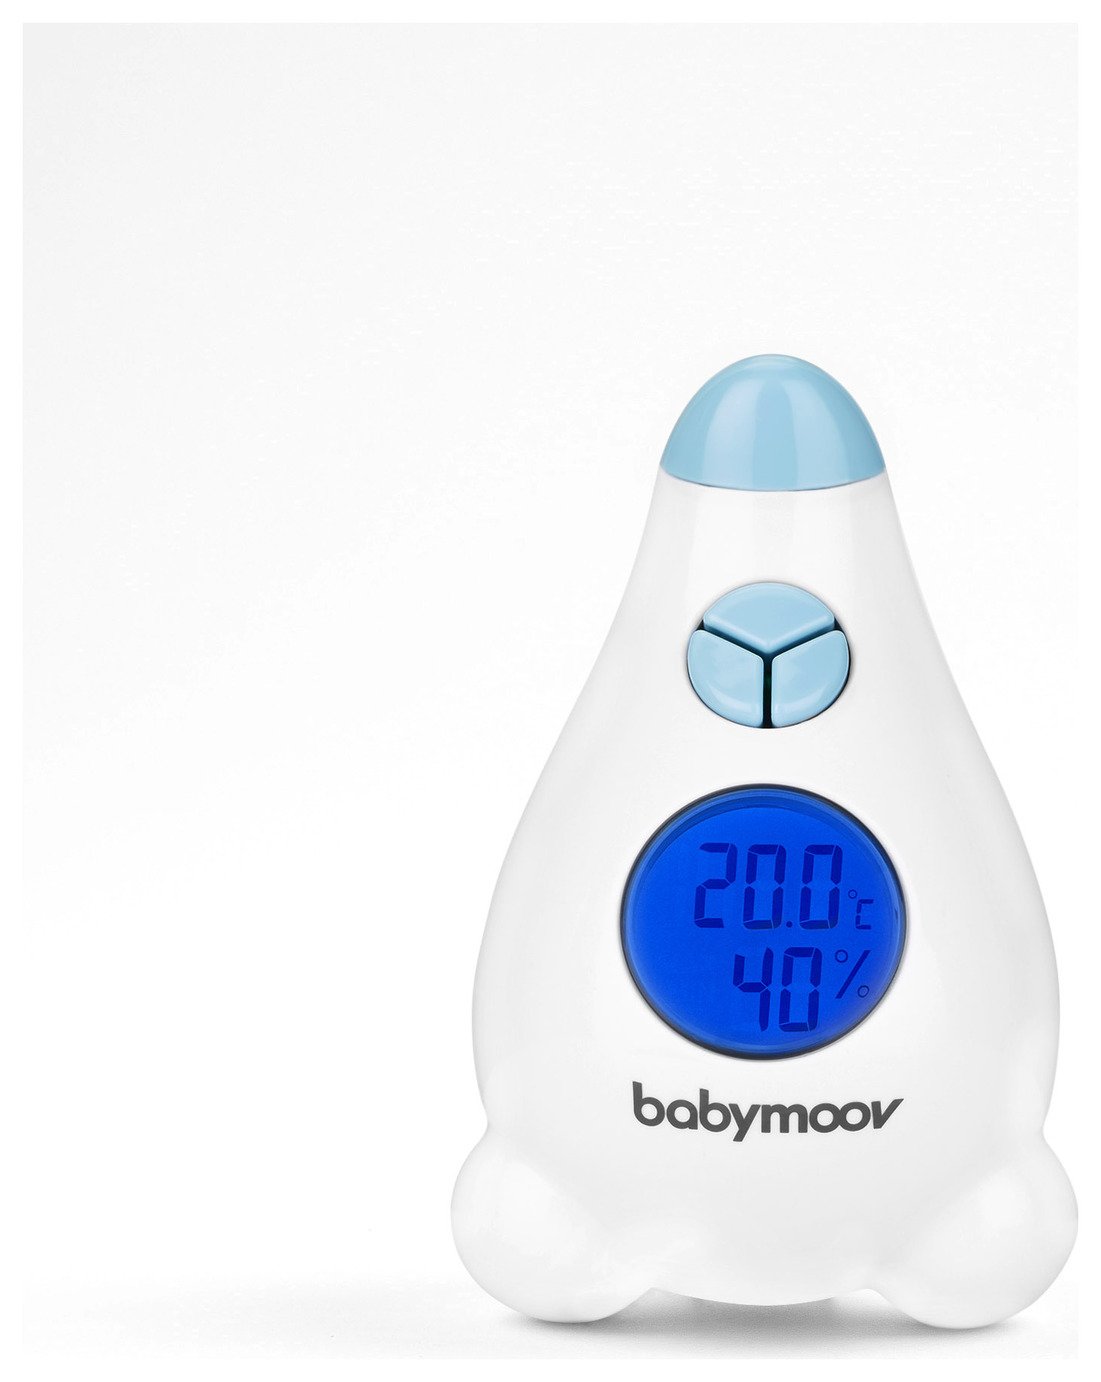 Babymoov Thermometer Hygrometer